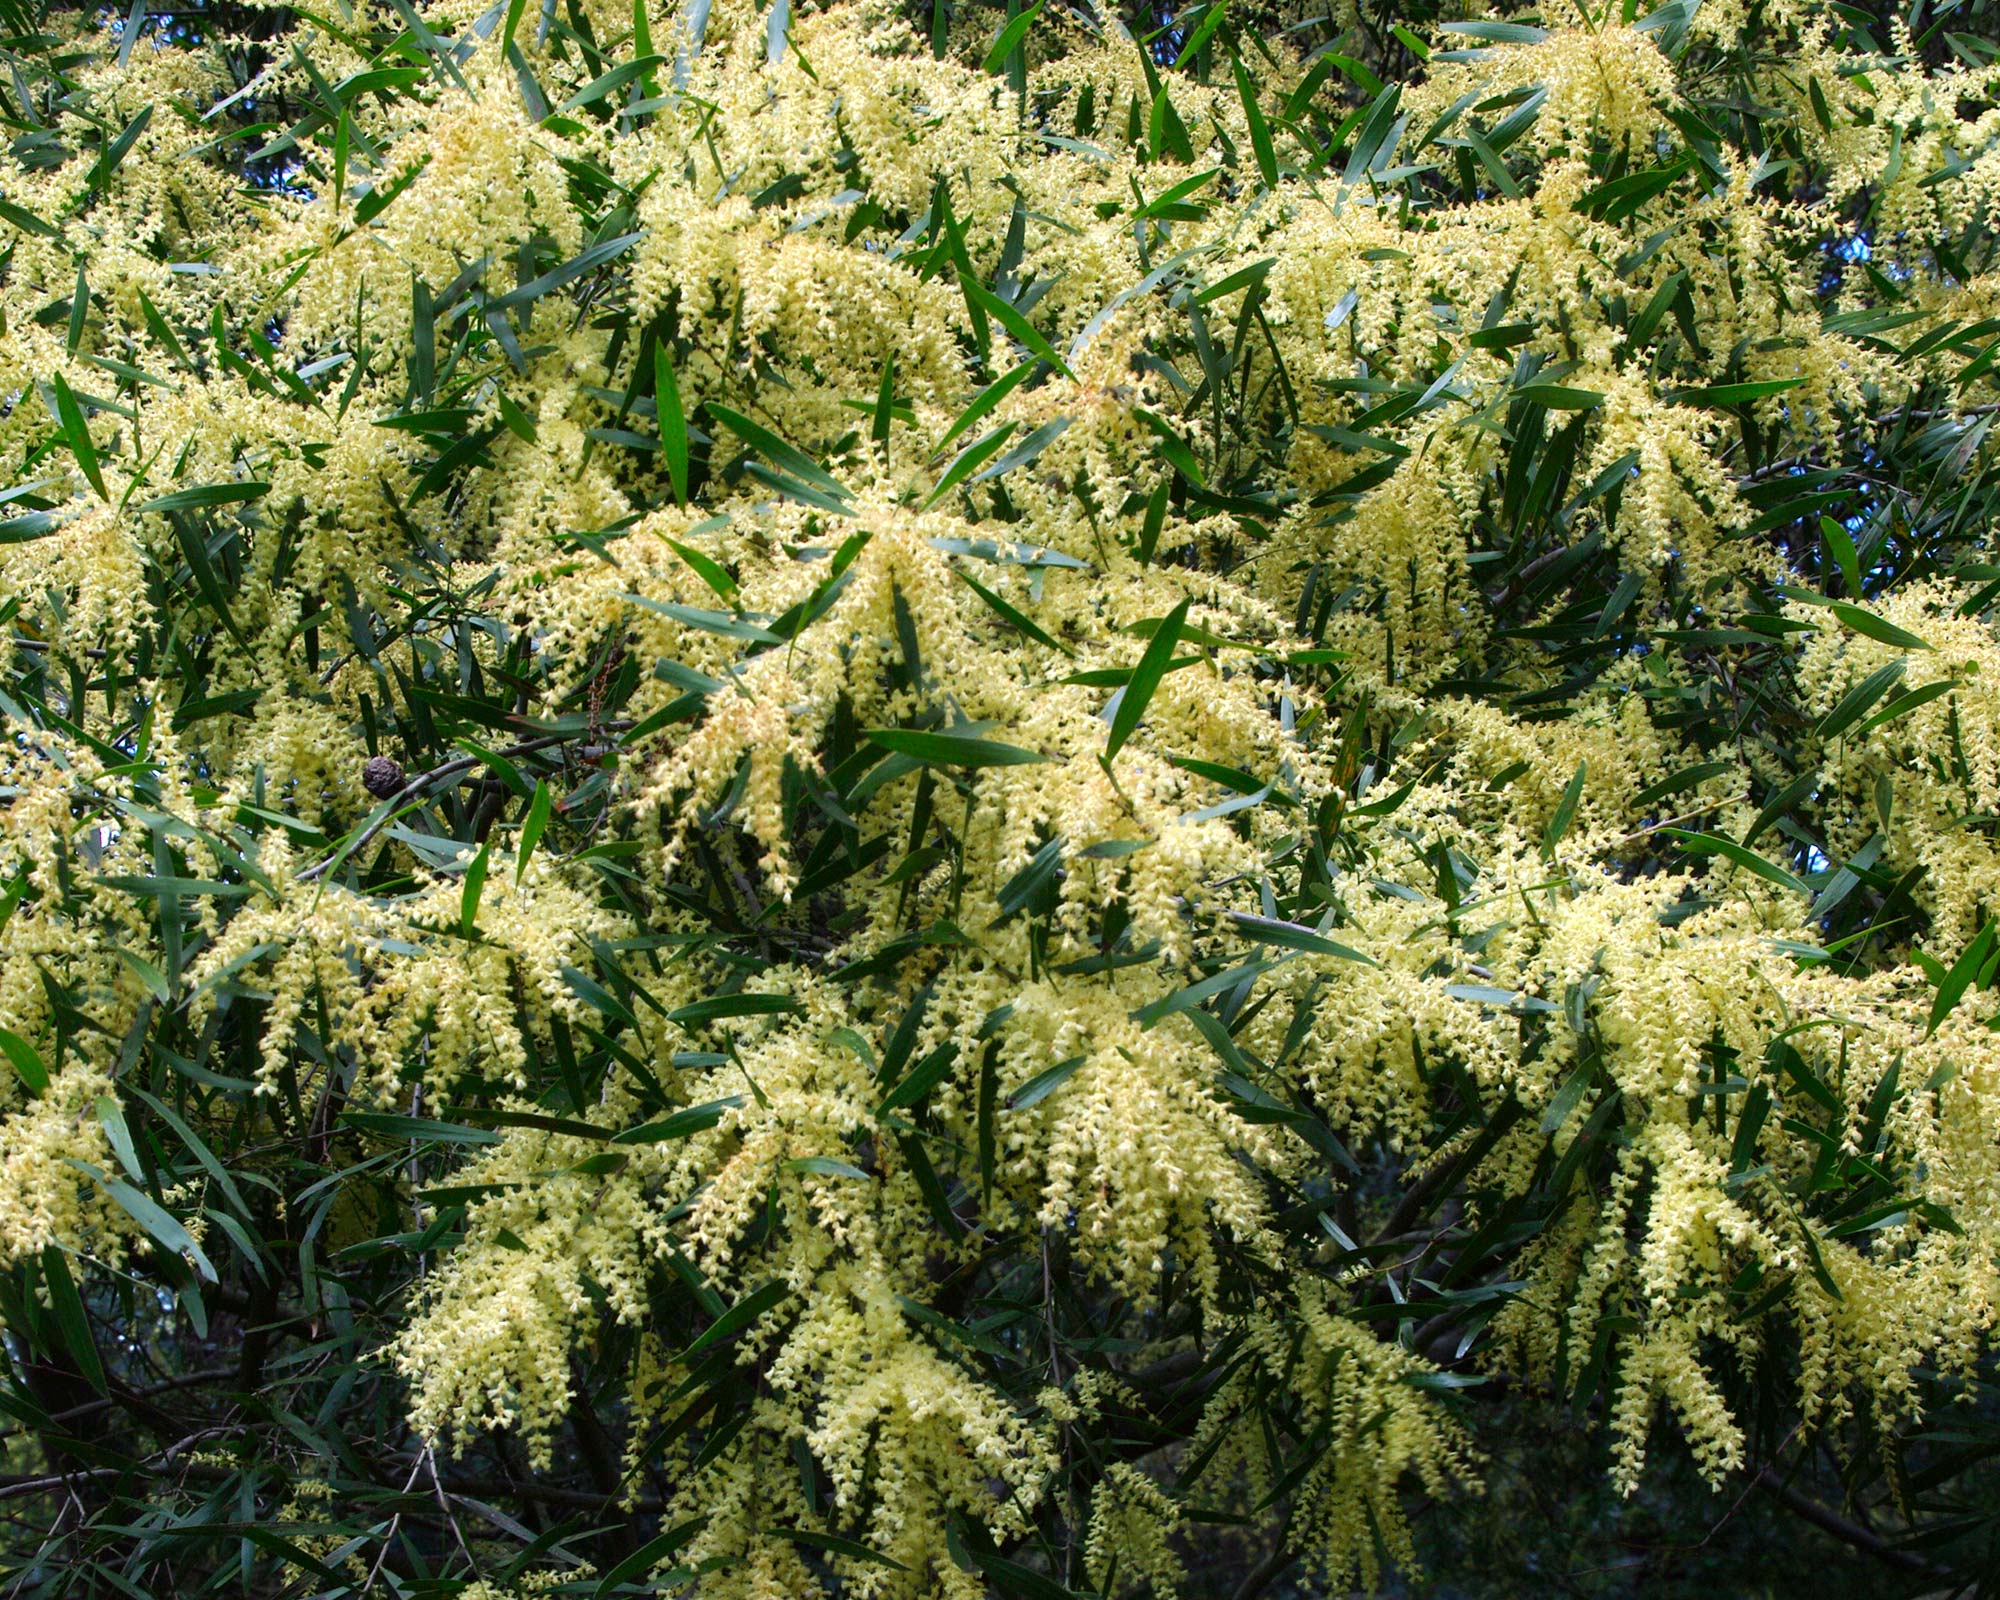 Acacia floribunda - pale yellow stamens in flower.